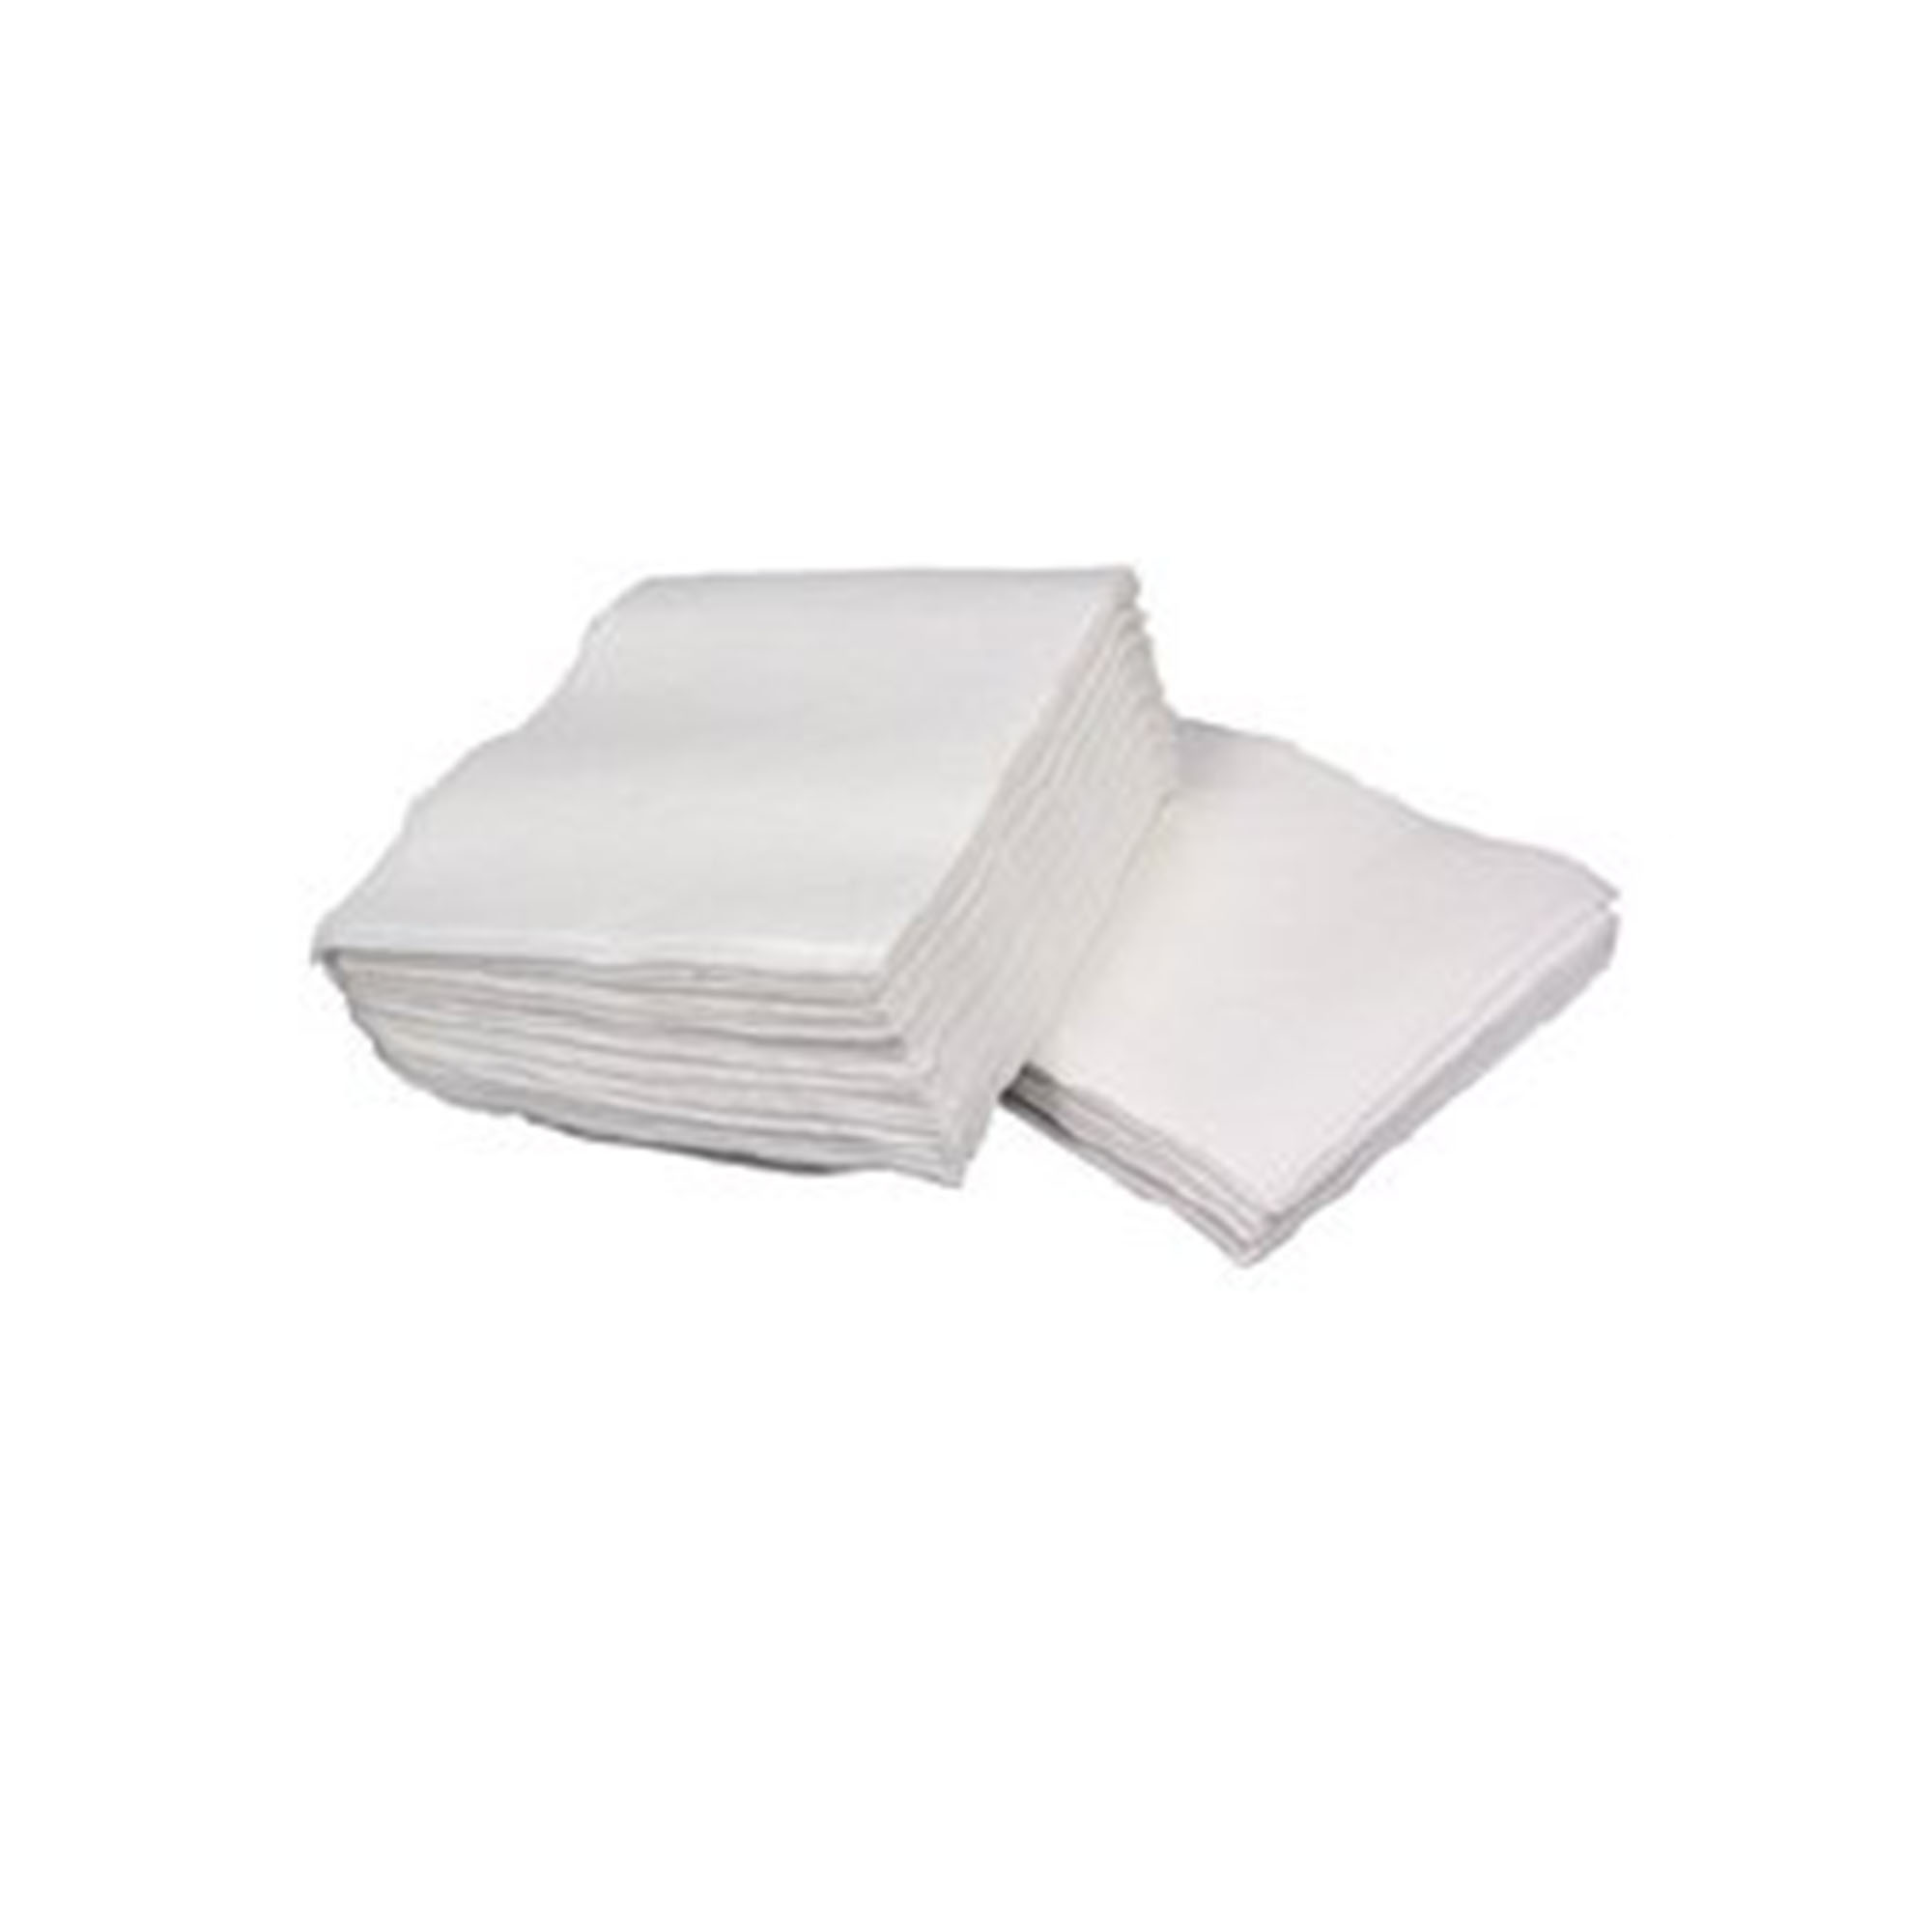 Toallas Supima 700 gramos, Nuestras toallas representan alta calidad y  perfección. Son calificadas como Las mejores Toallas por ser súper  suaves, absorbentes y de secado rápido., By Luzka Pimma